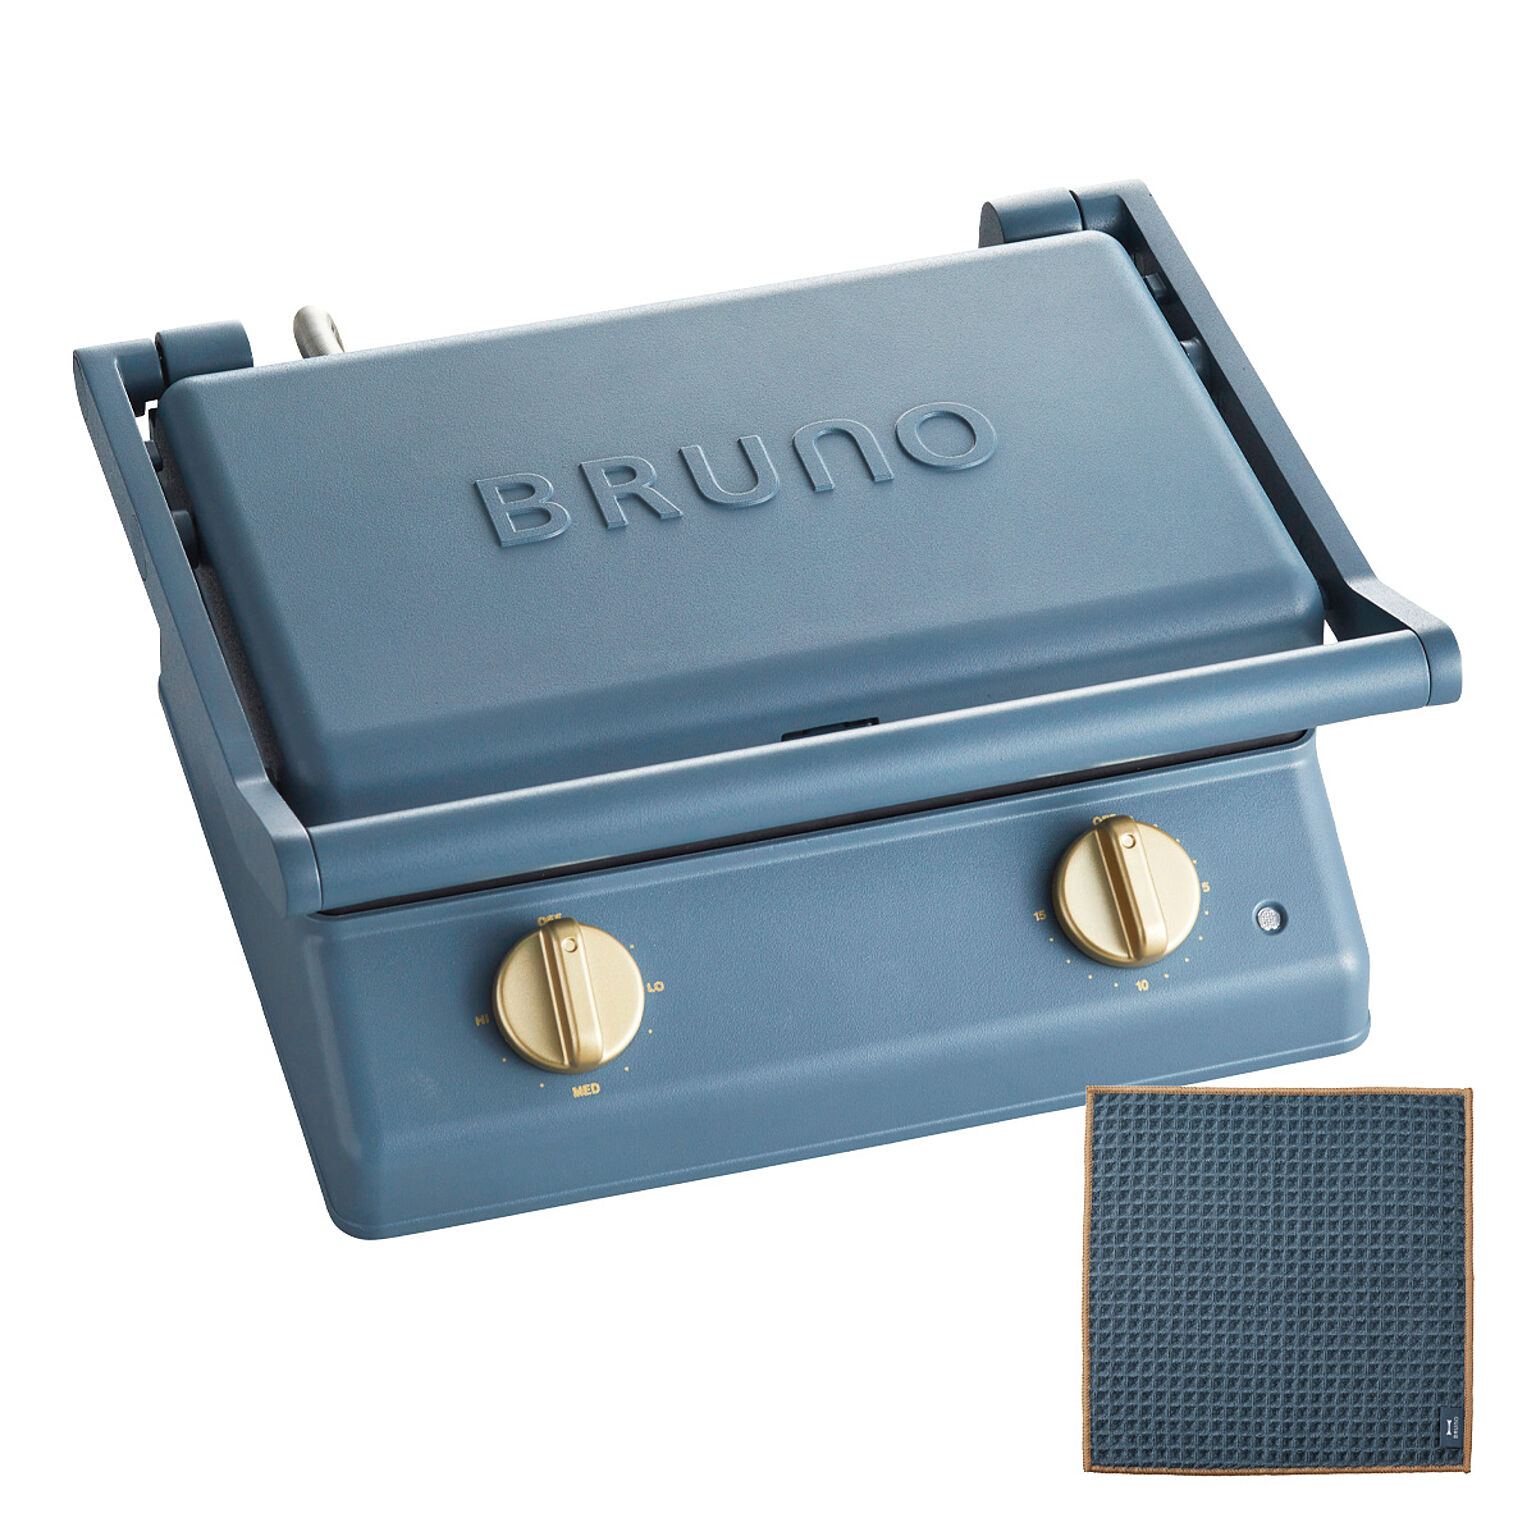 ブルーノ BRUNO グリルサンドメーカー ダブル BOE084 ホットサンドメーカー キッチン家電 調理器具 食パン サンドイッチ